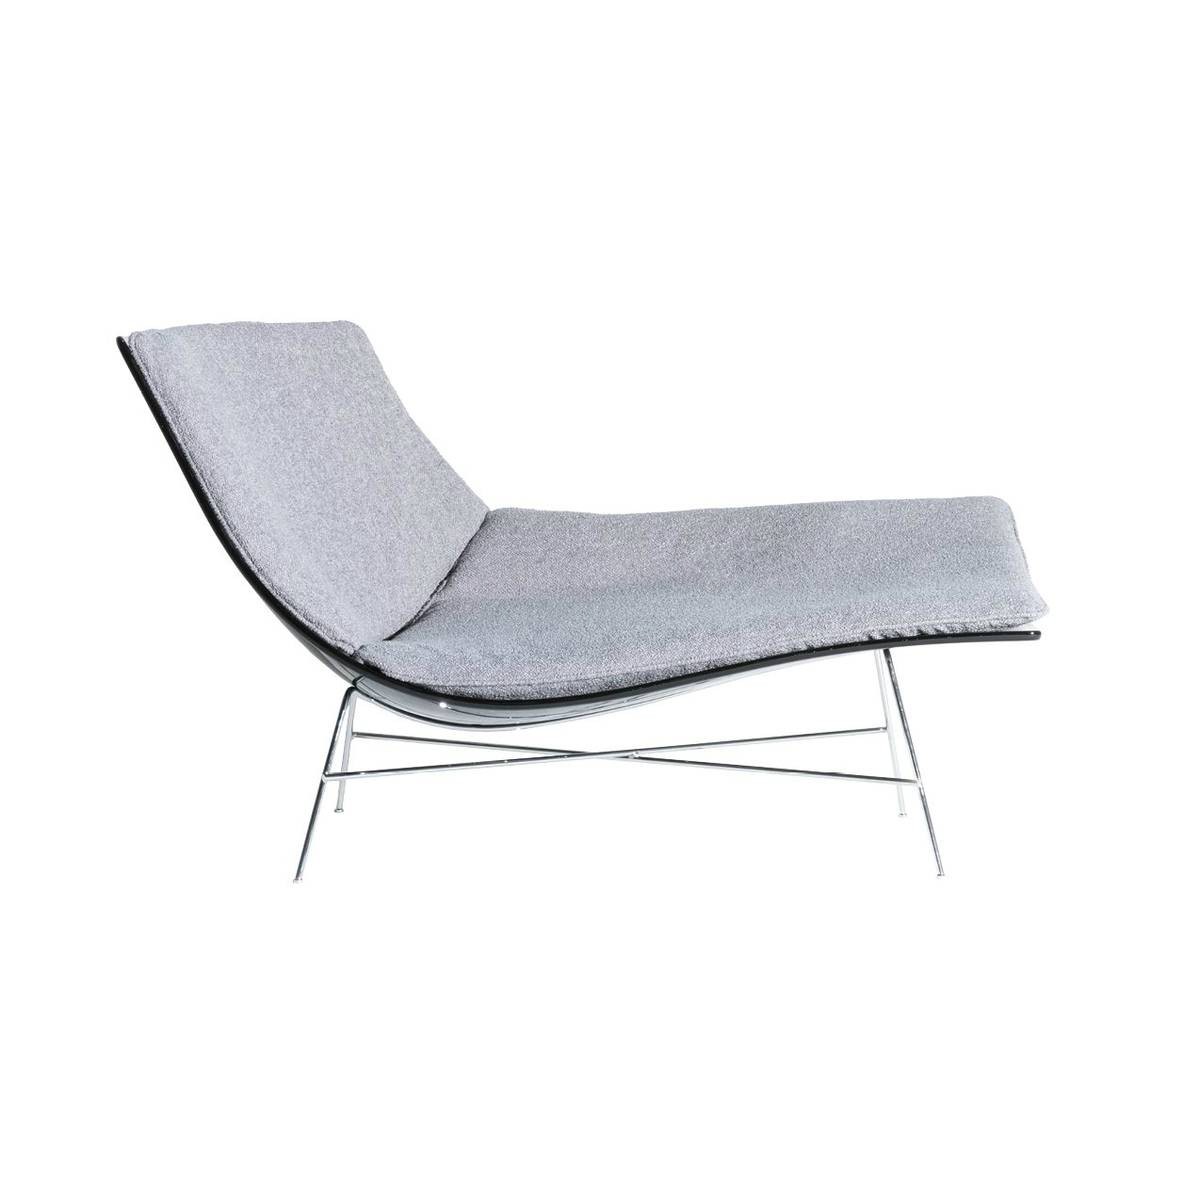 Шезлонг для дома Full moon chaise lounge из Италии фабрики DRIADE